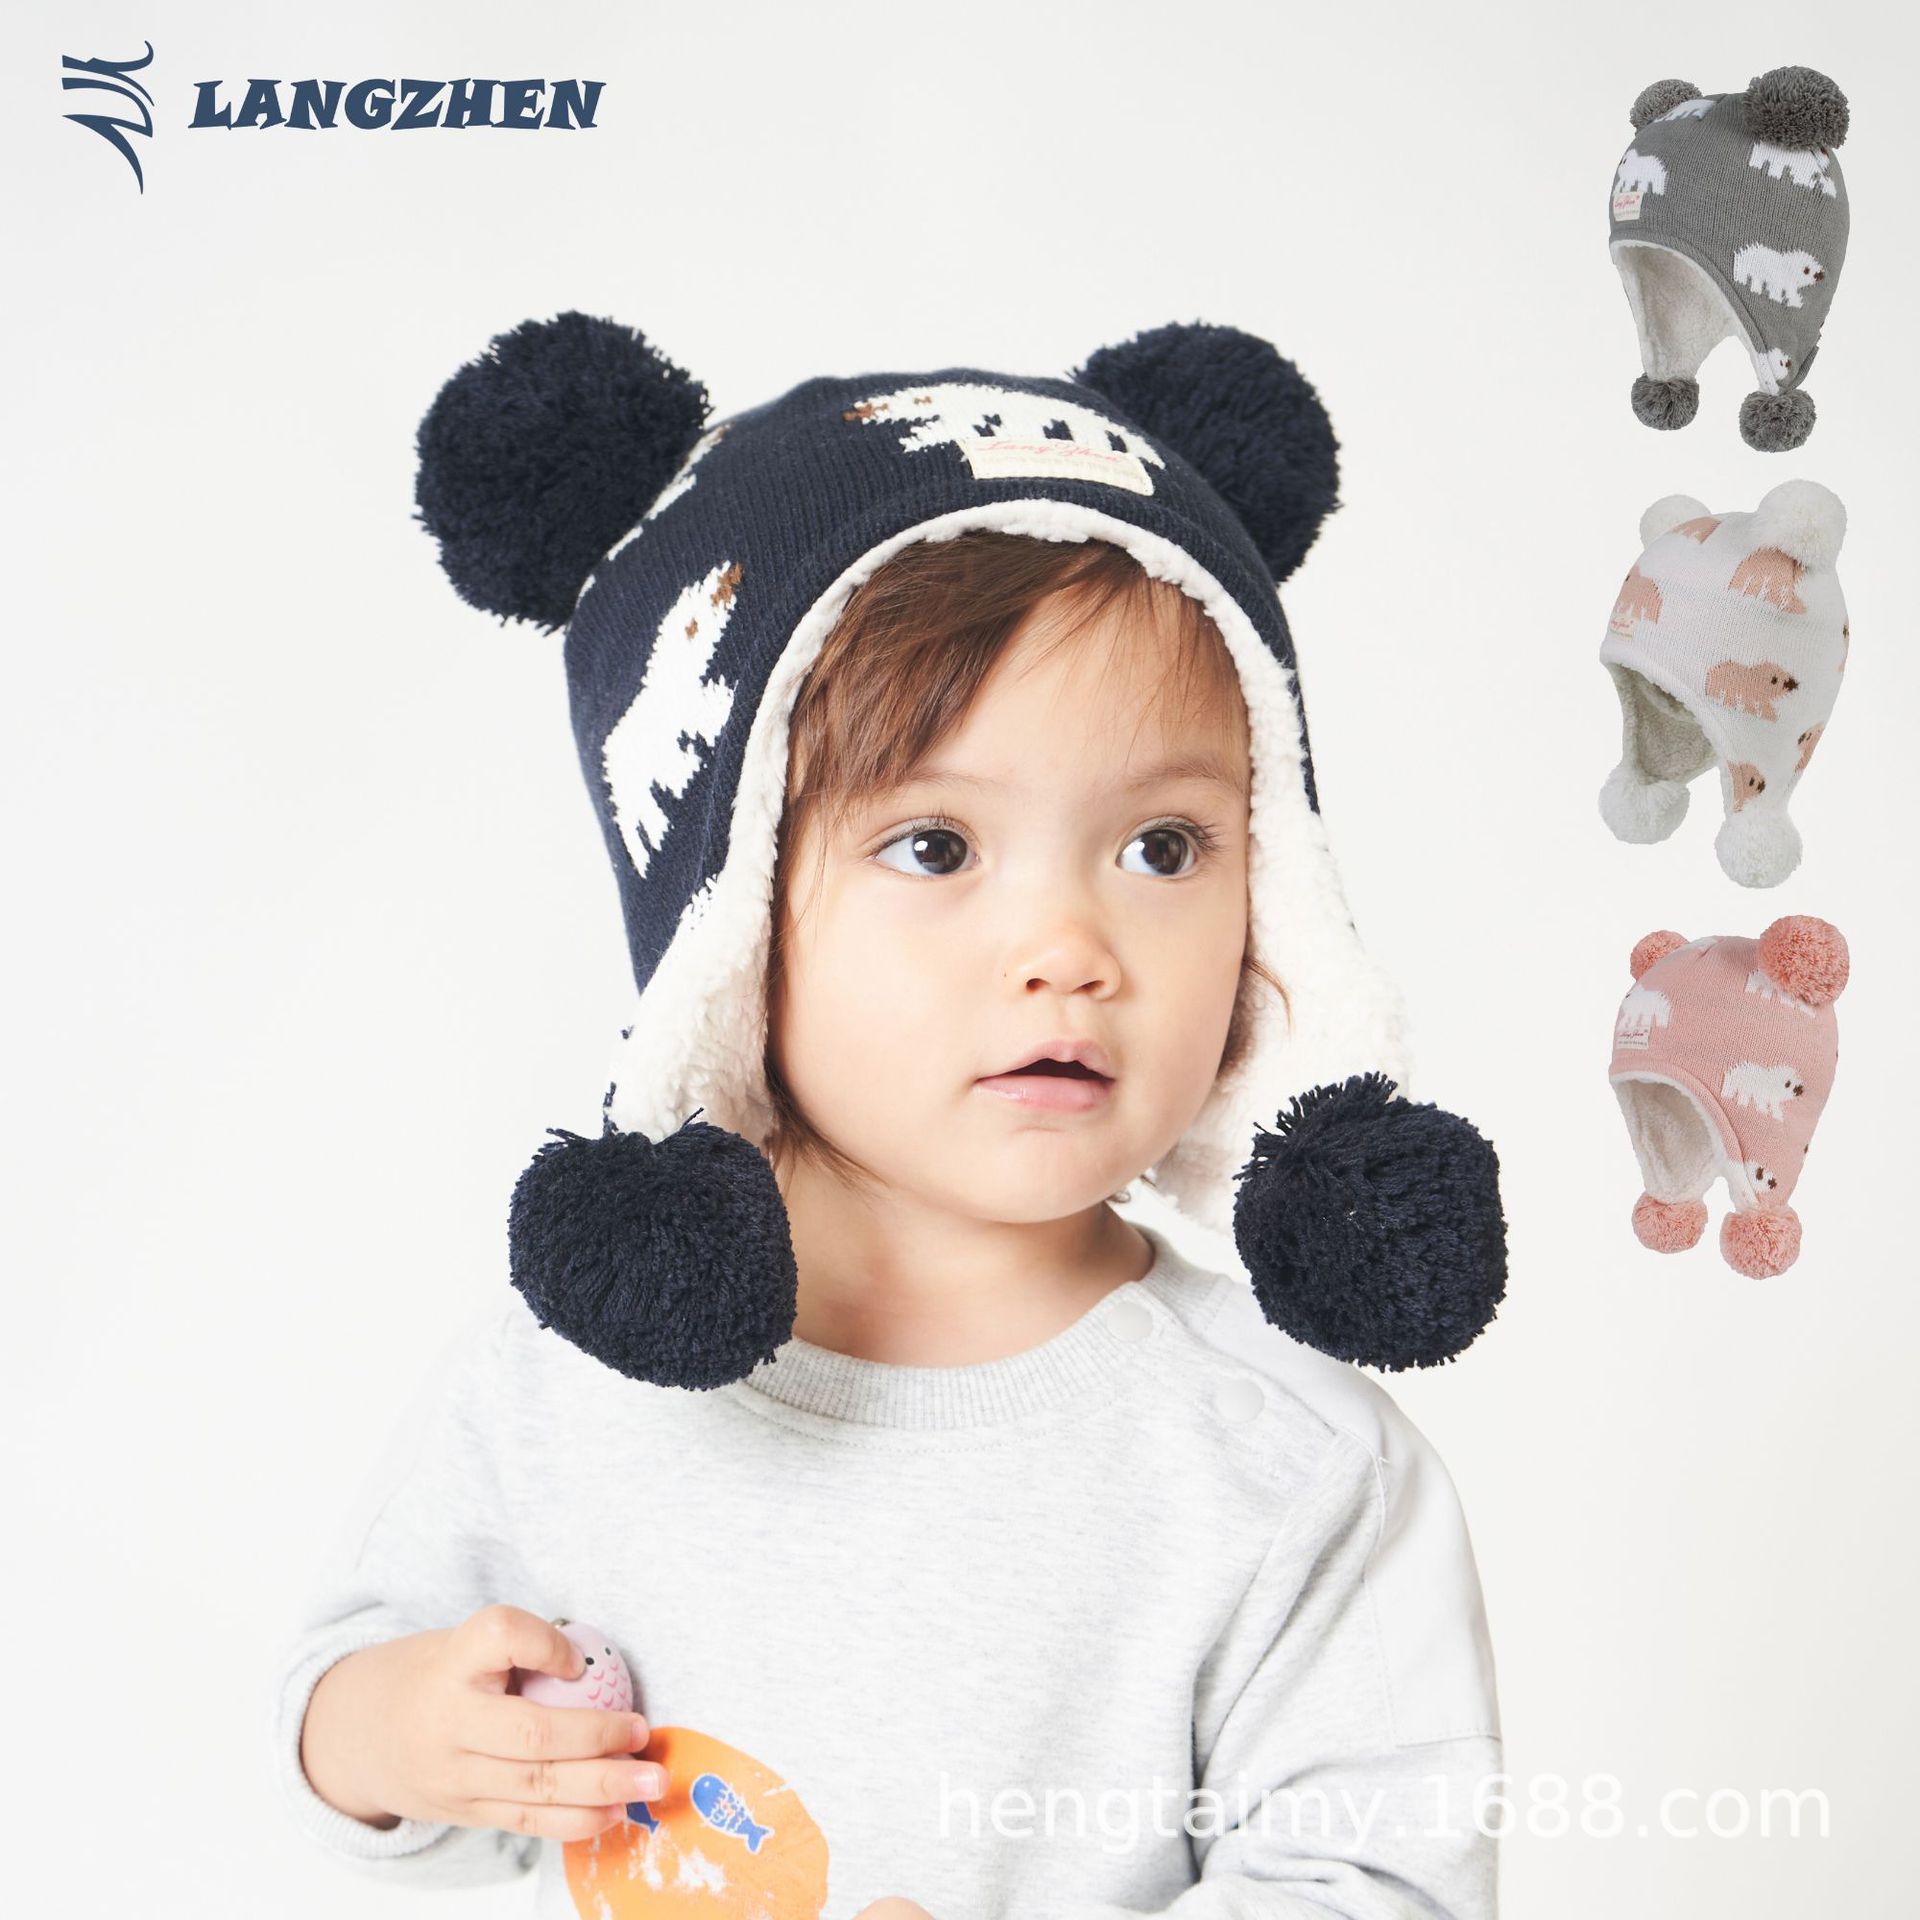 Langzhen 新しい秋と冬の子供用帽子プラスベルベットで暖かく保つクマジャカードニット帽子赤ちゃん漫画耳保護帽子